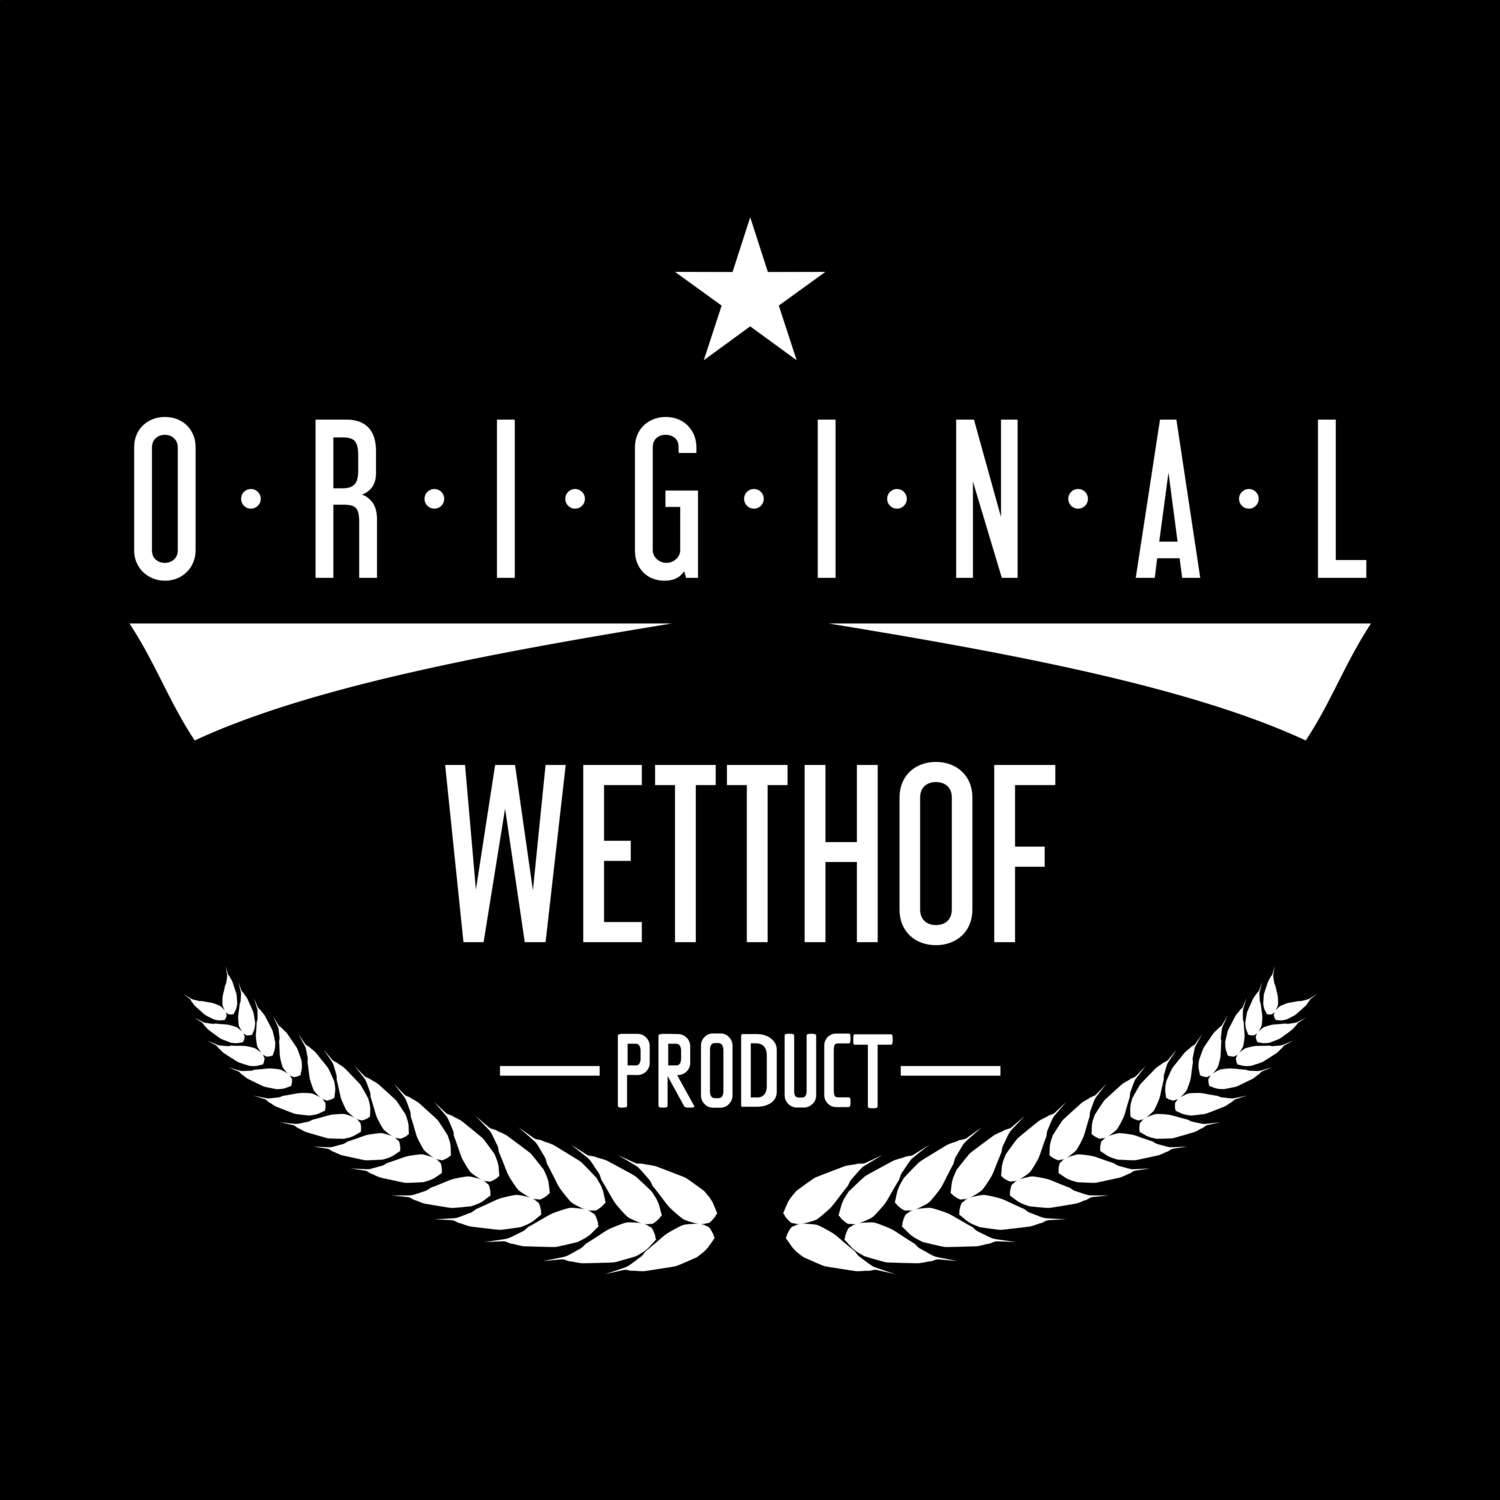 Wetthof T-Shirt »Original Product«